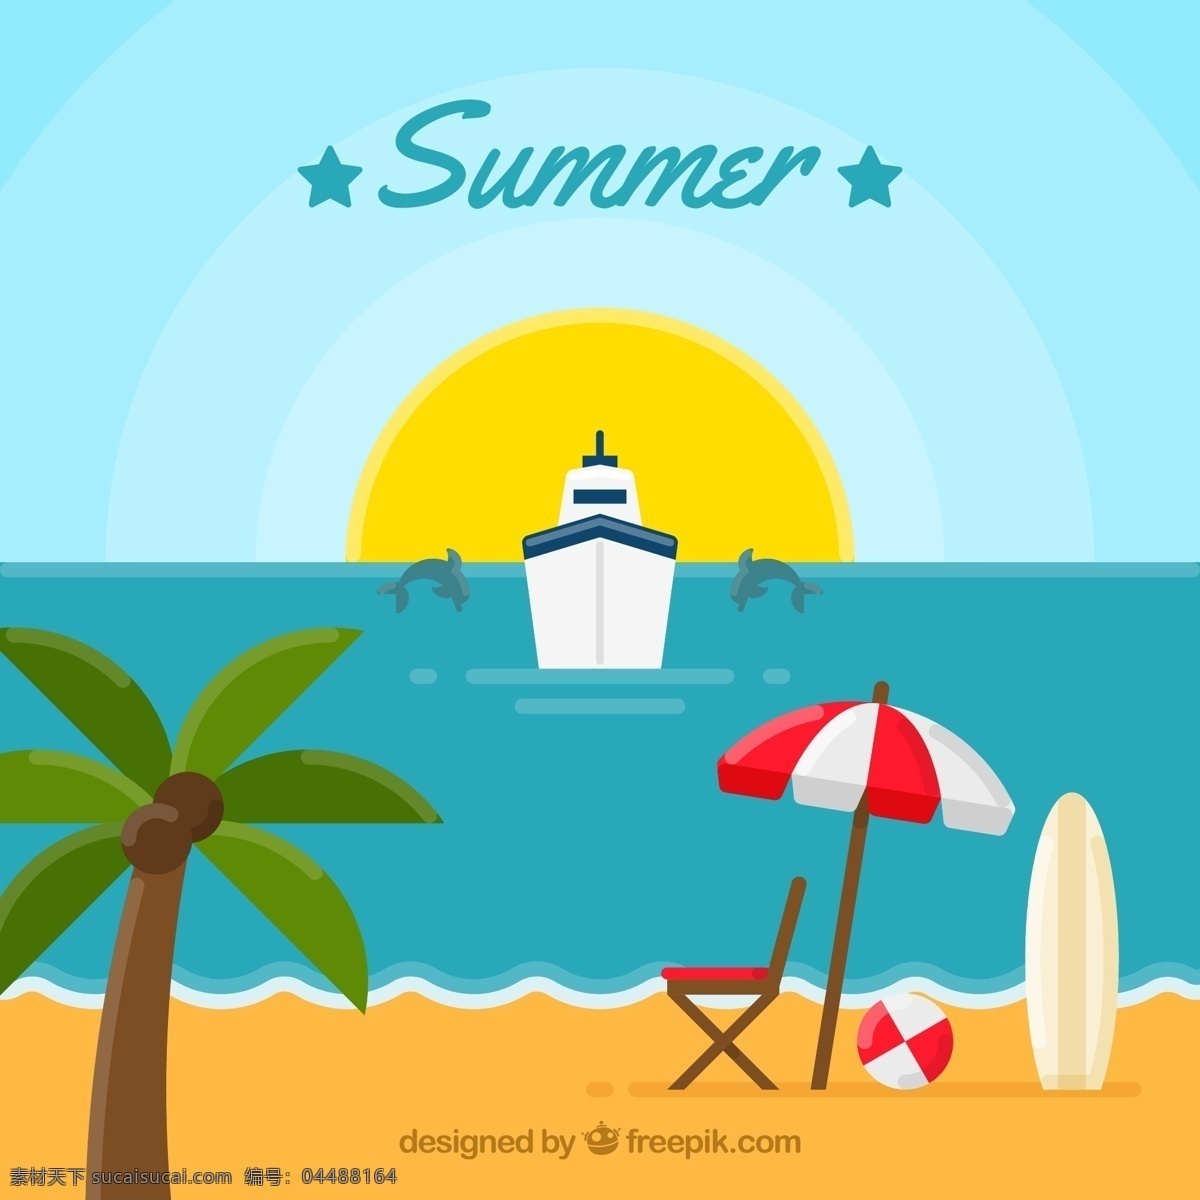 夏季 游轮 沙滩 风景 矢量 夏天 大海 渡轮 太阳伞 椰树 太阳